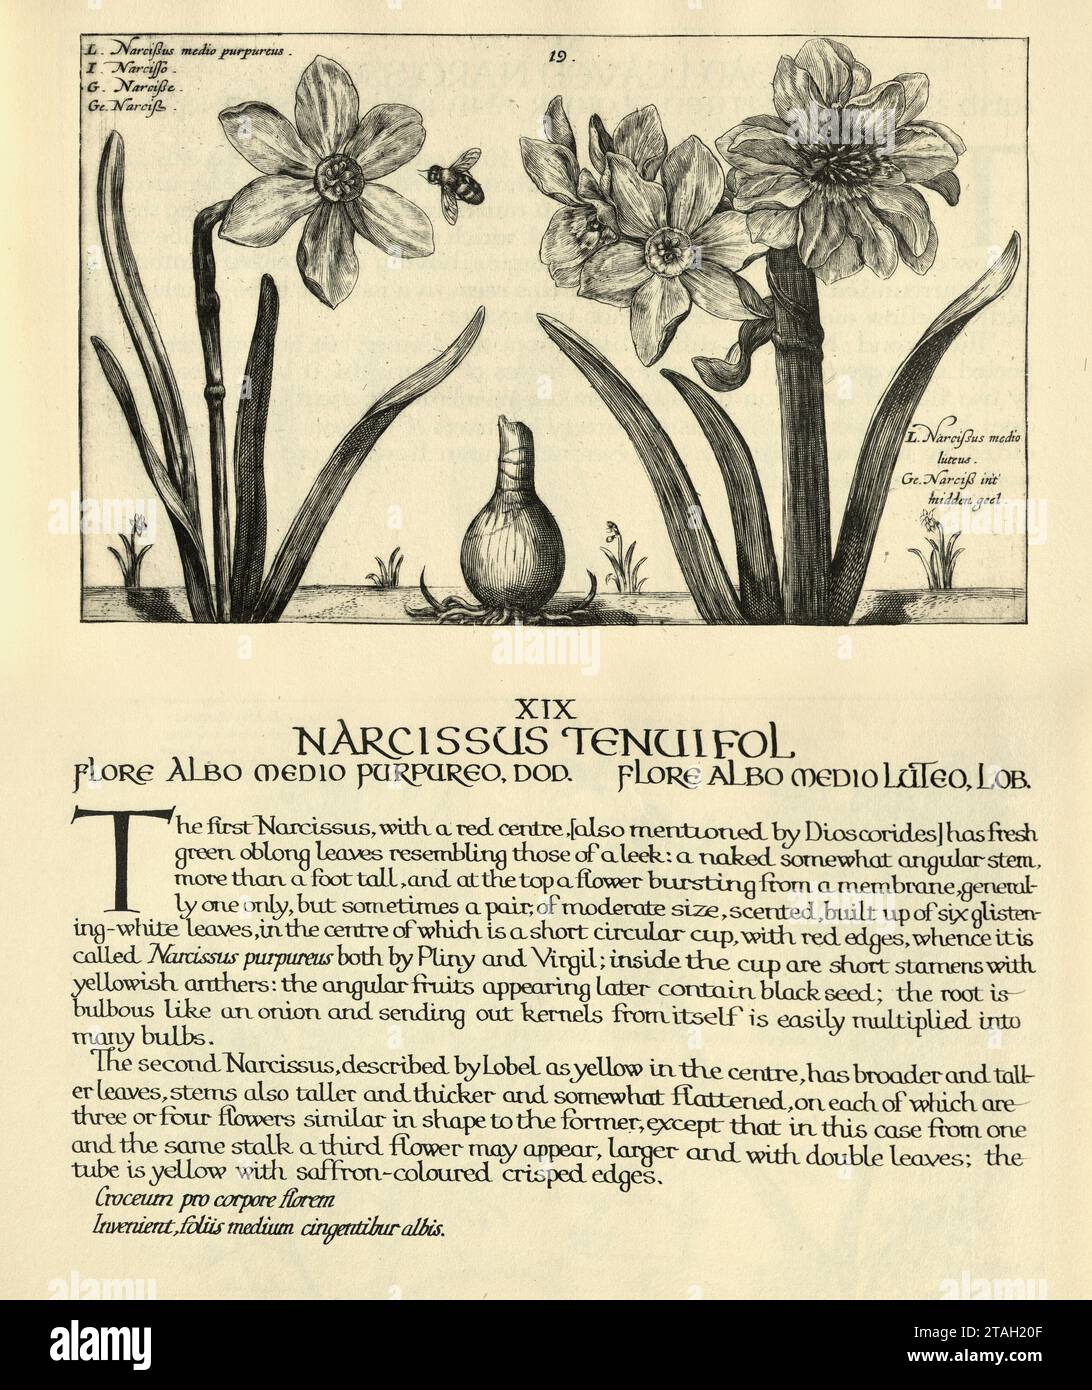 Estampe d'art botanique de Narcissus tenuifolius, plantes vivaces herbacées bulbeuses, d'Hortus Floridus par Crispin de passe, illustration vintage Banque D'Images